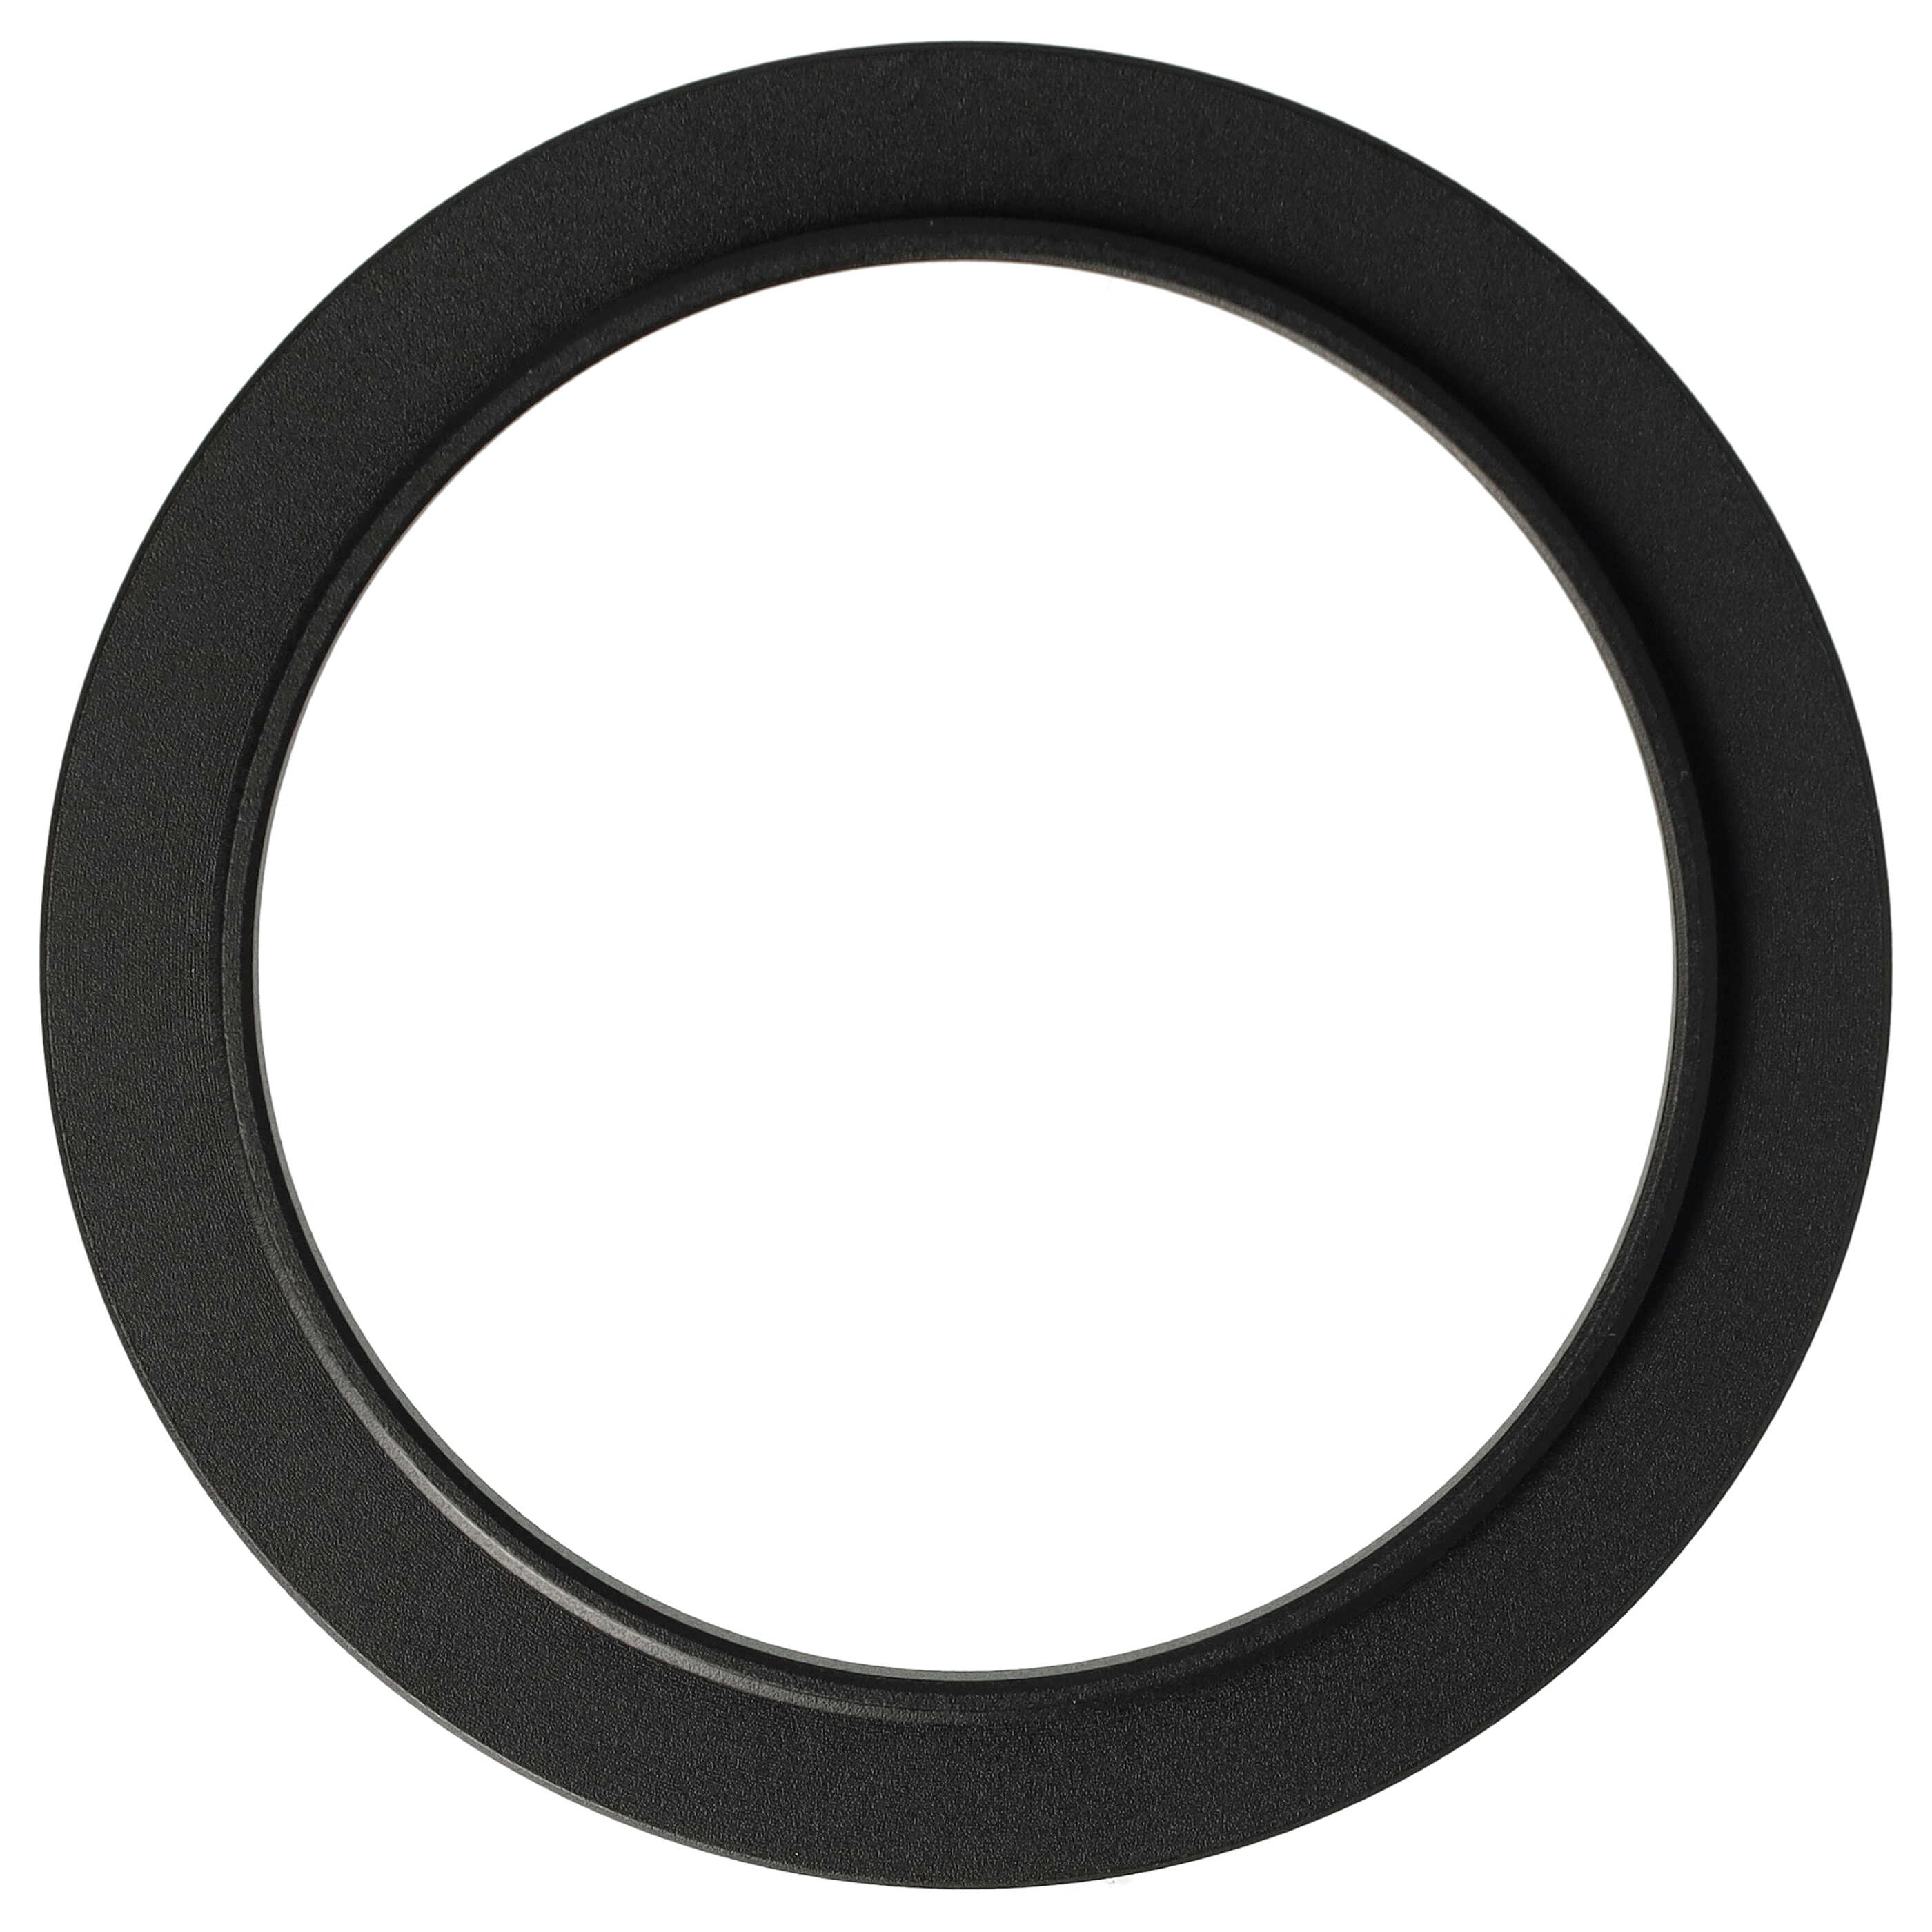 Step-Up-Ring Adapter 49 mm auf 58 mm passend für diverse Kamera-Objektive - Filteradapter